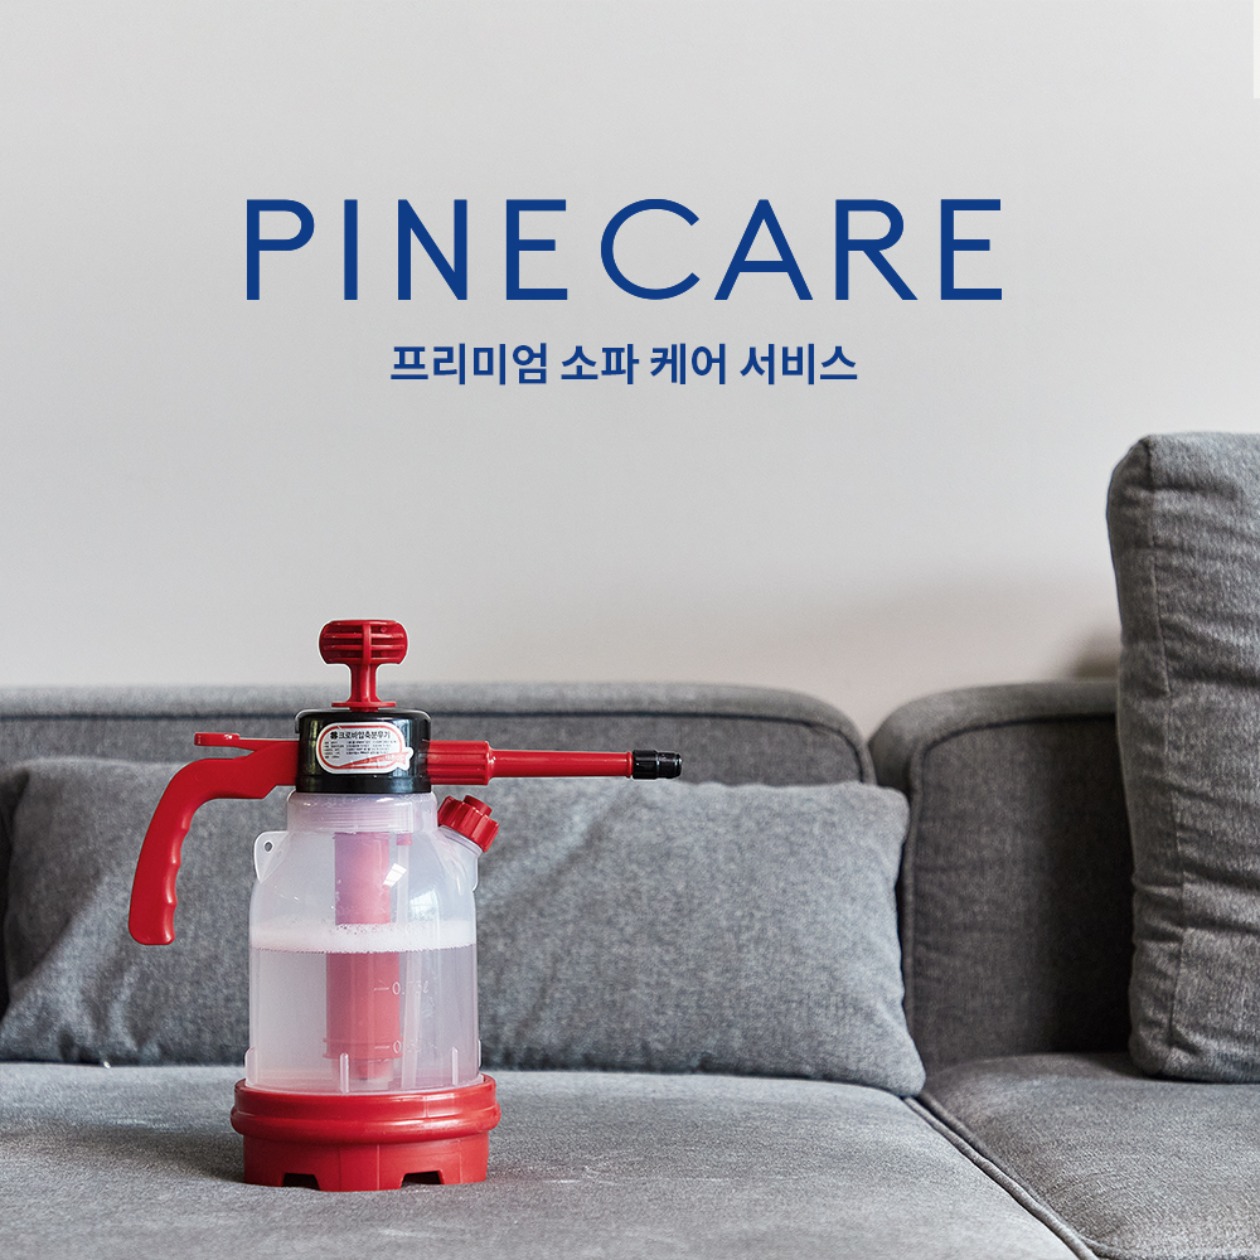 PINE-CARE / 소파 케어 서비스